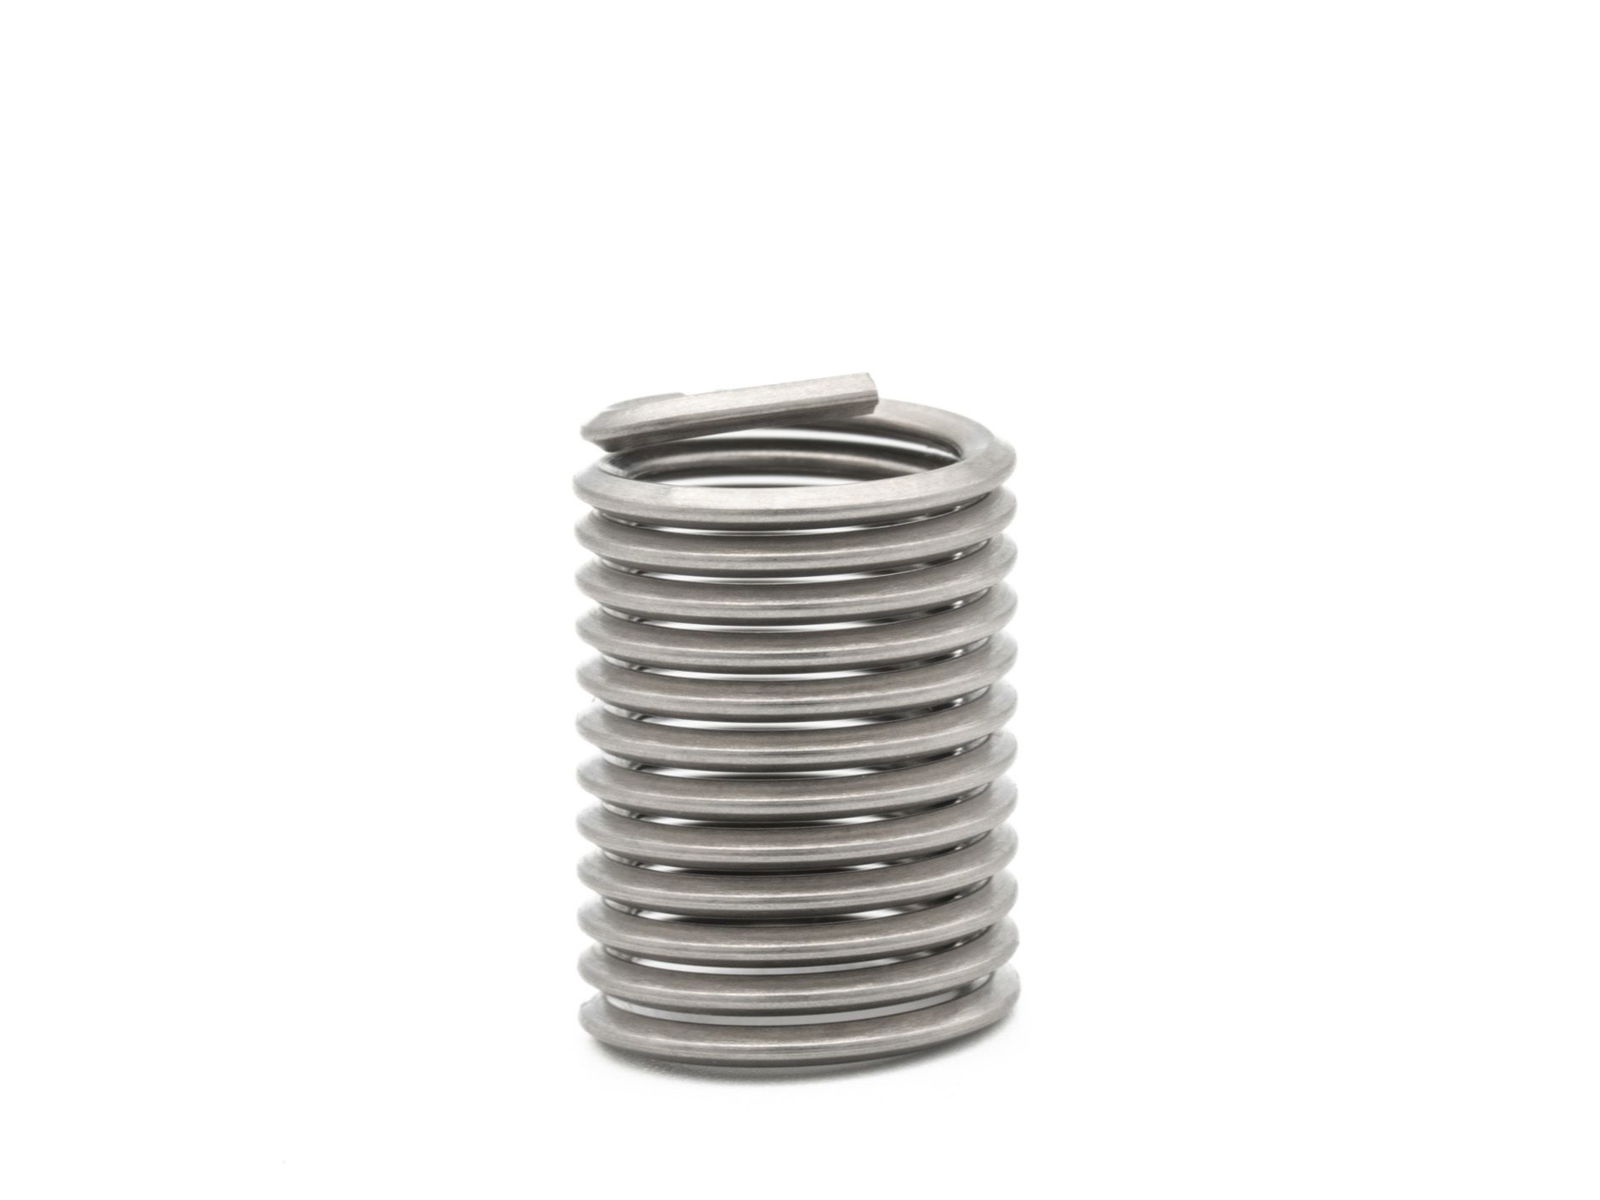 BaerCoil Wire Thread Inserts UNF No. 4 x 48 - 2.0 D (5.69 mm) -100 pcs.